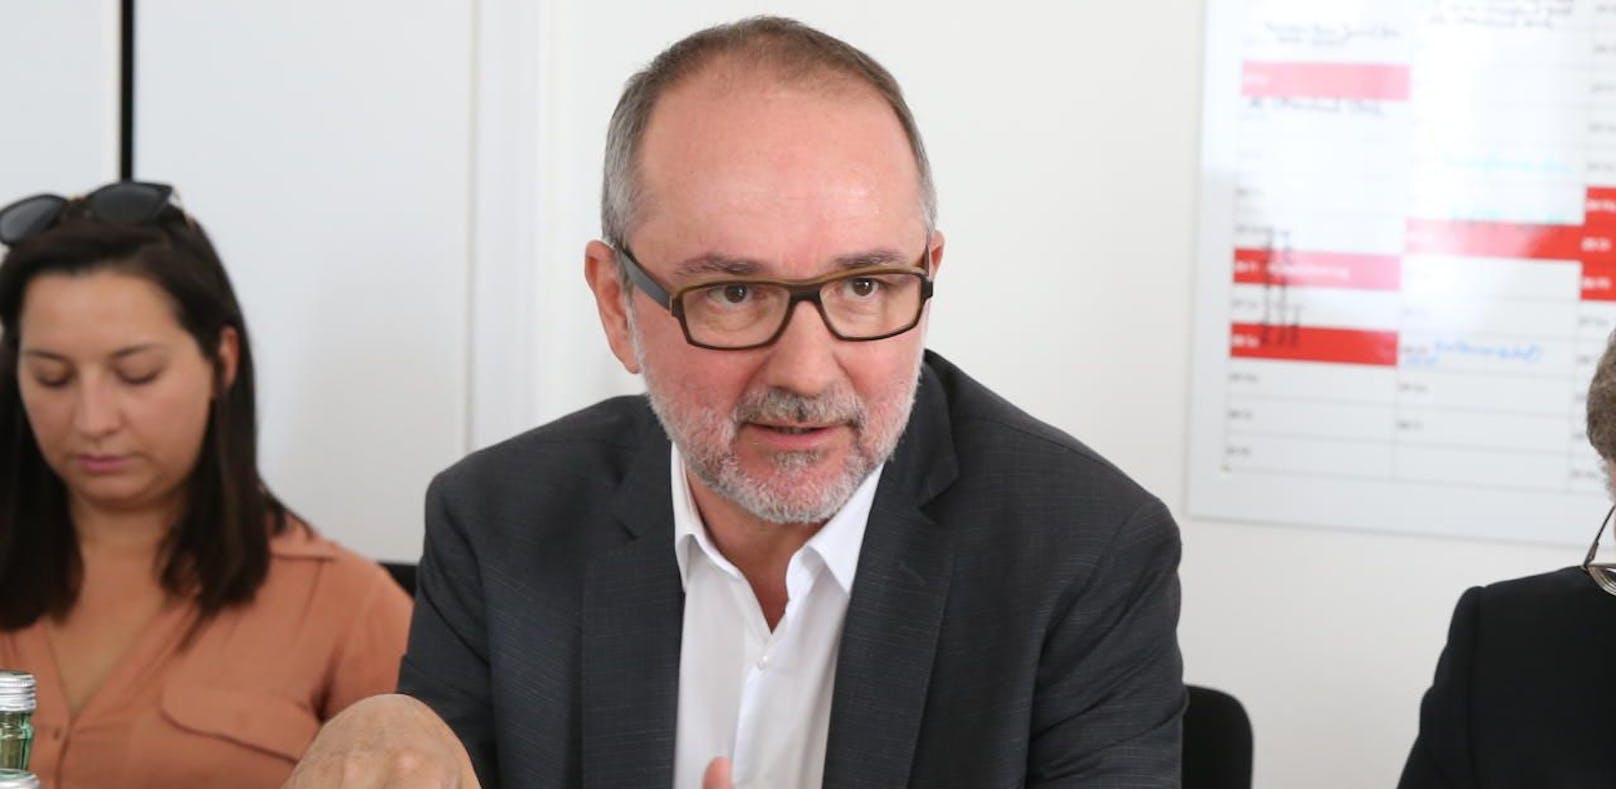 SPÖ-Bundesgeschäftsführer Thomas Drozda und Wahlkampfmanager Christian Deutsch im Gespräch mit Journalisten.